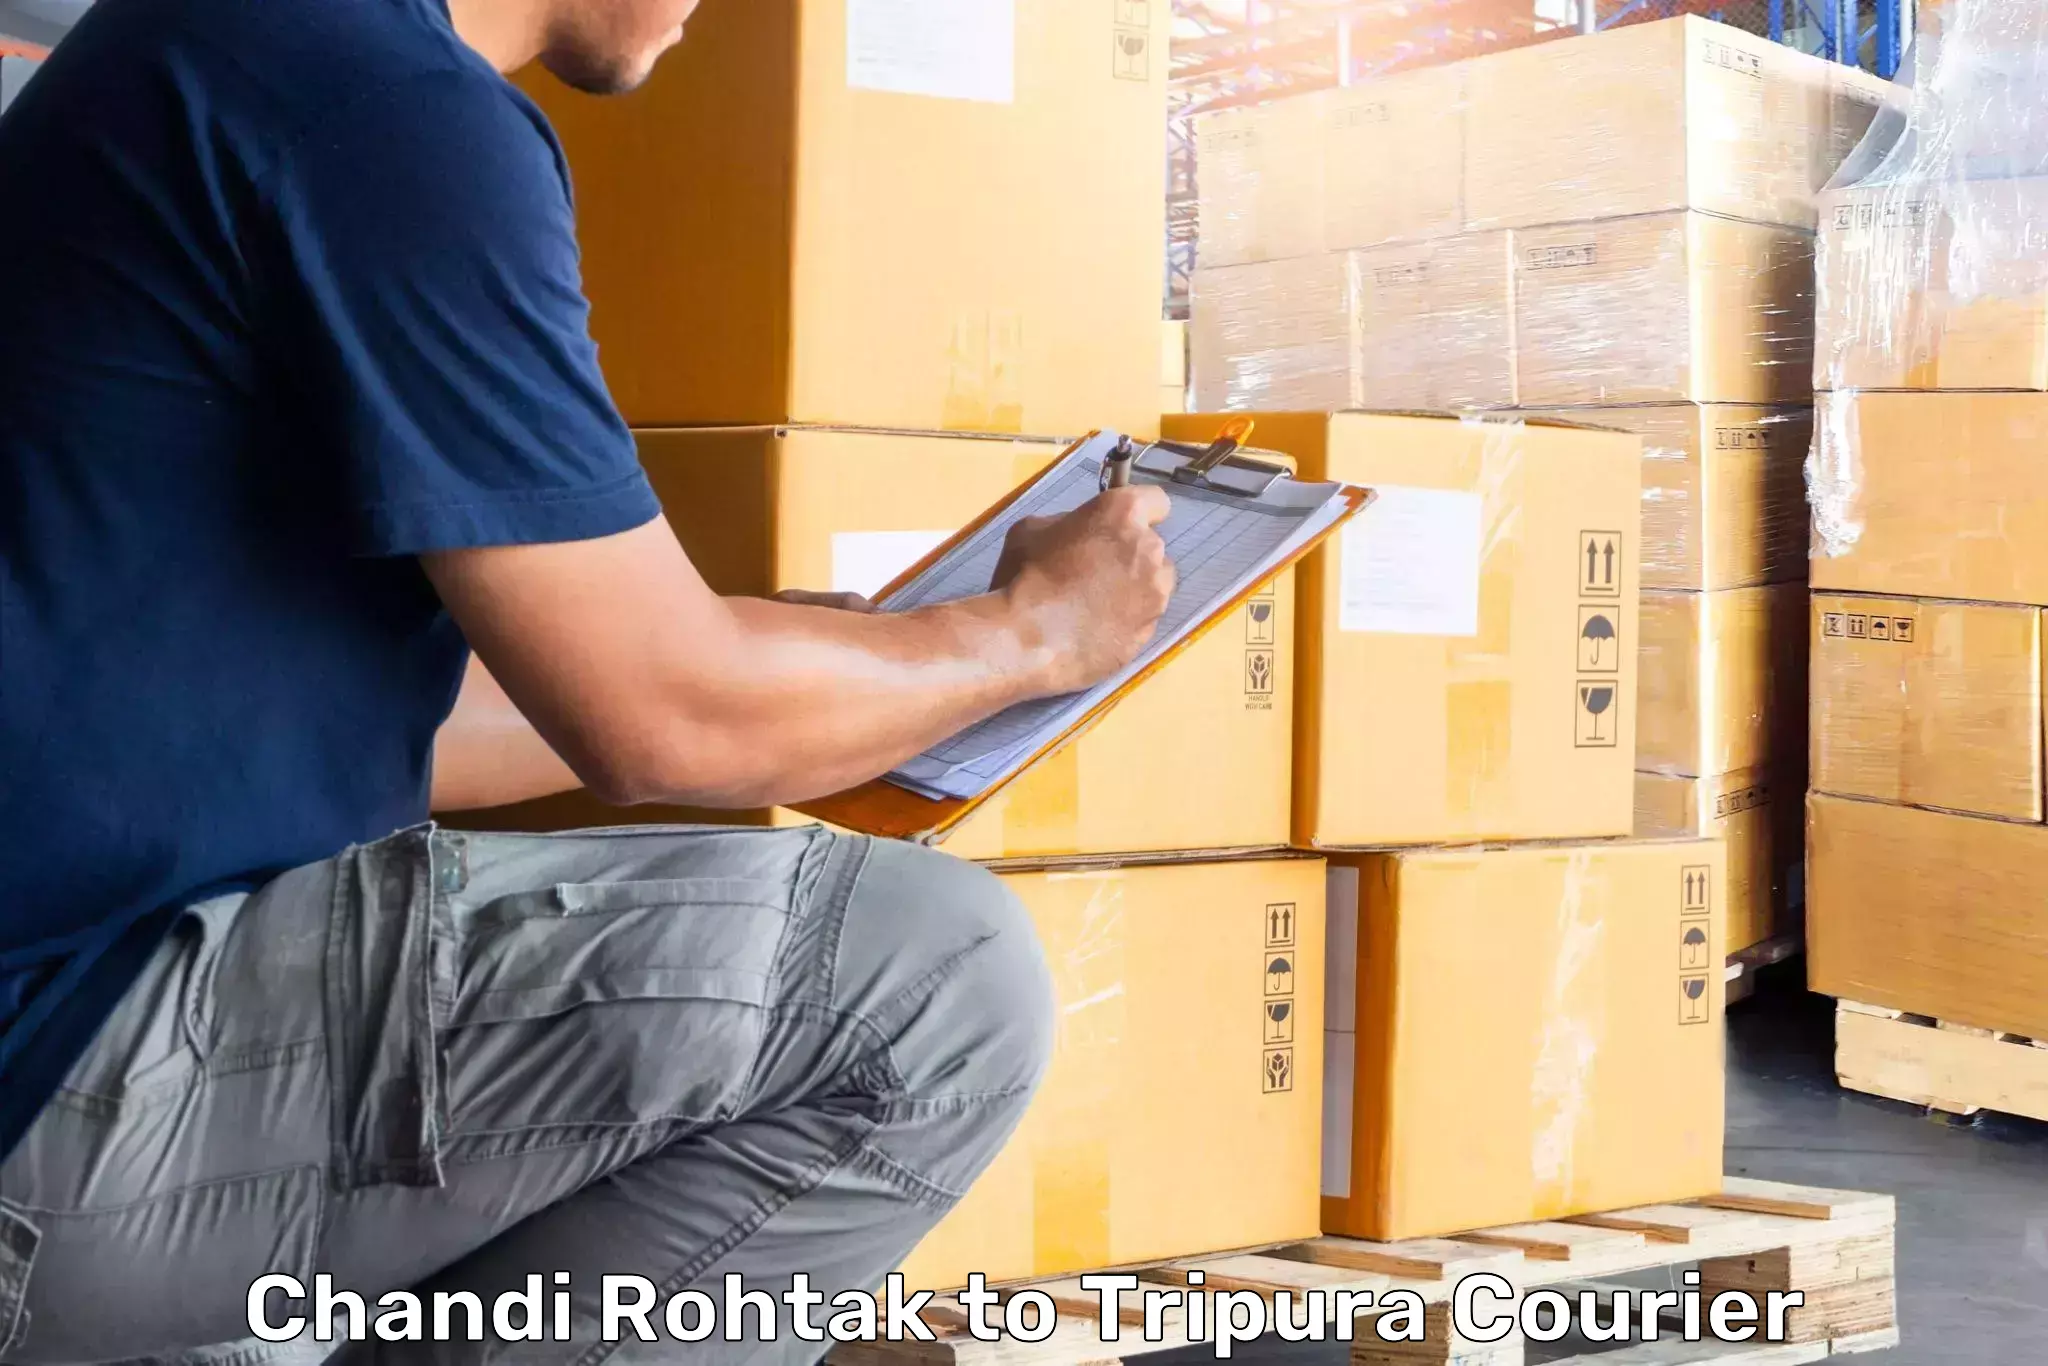 Luggage shipment strategy Chandi Rohtak to Tripura